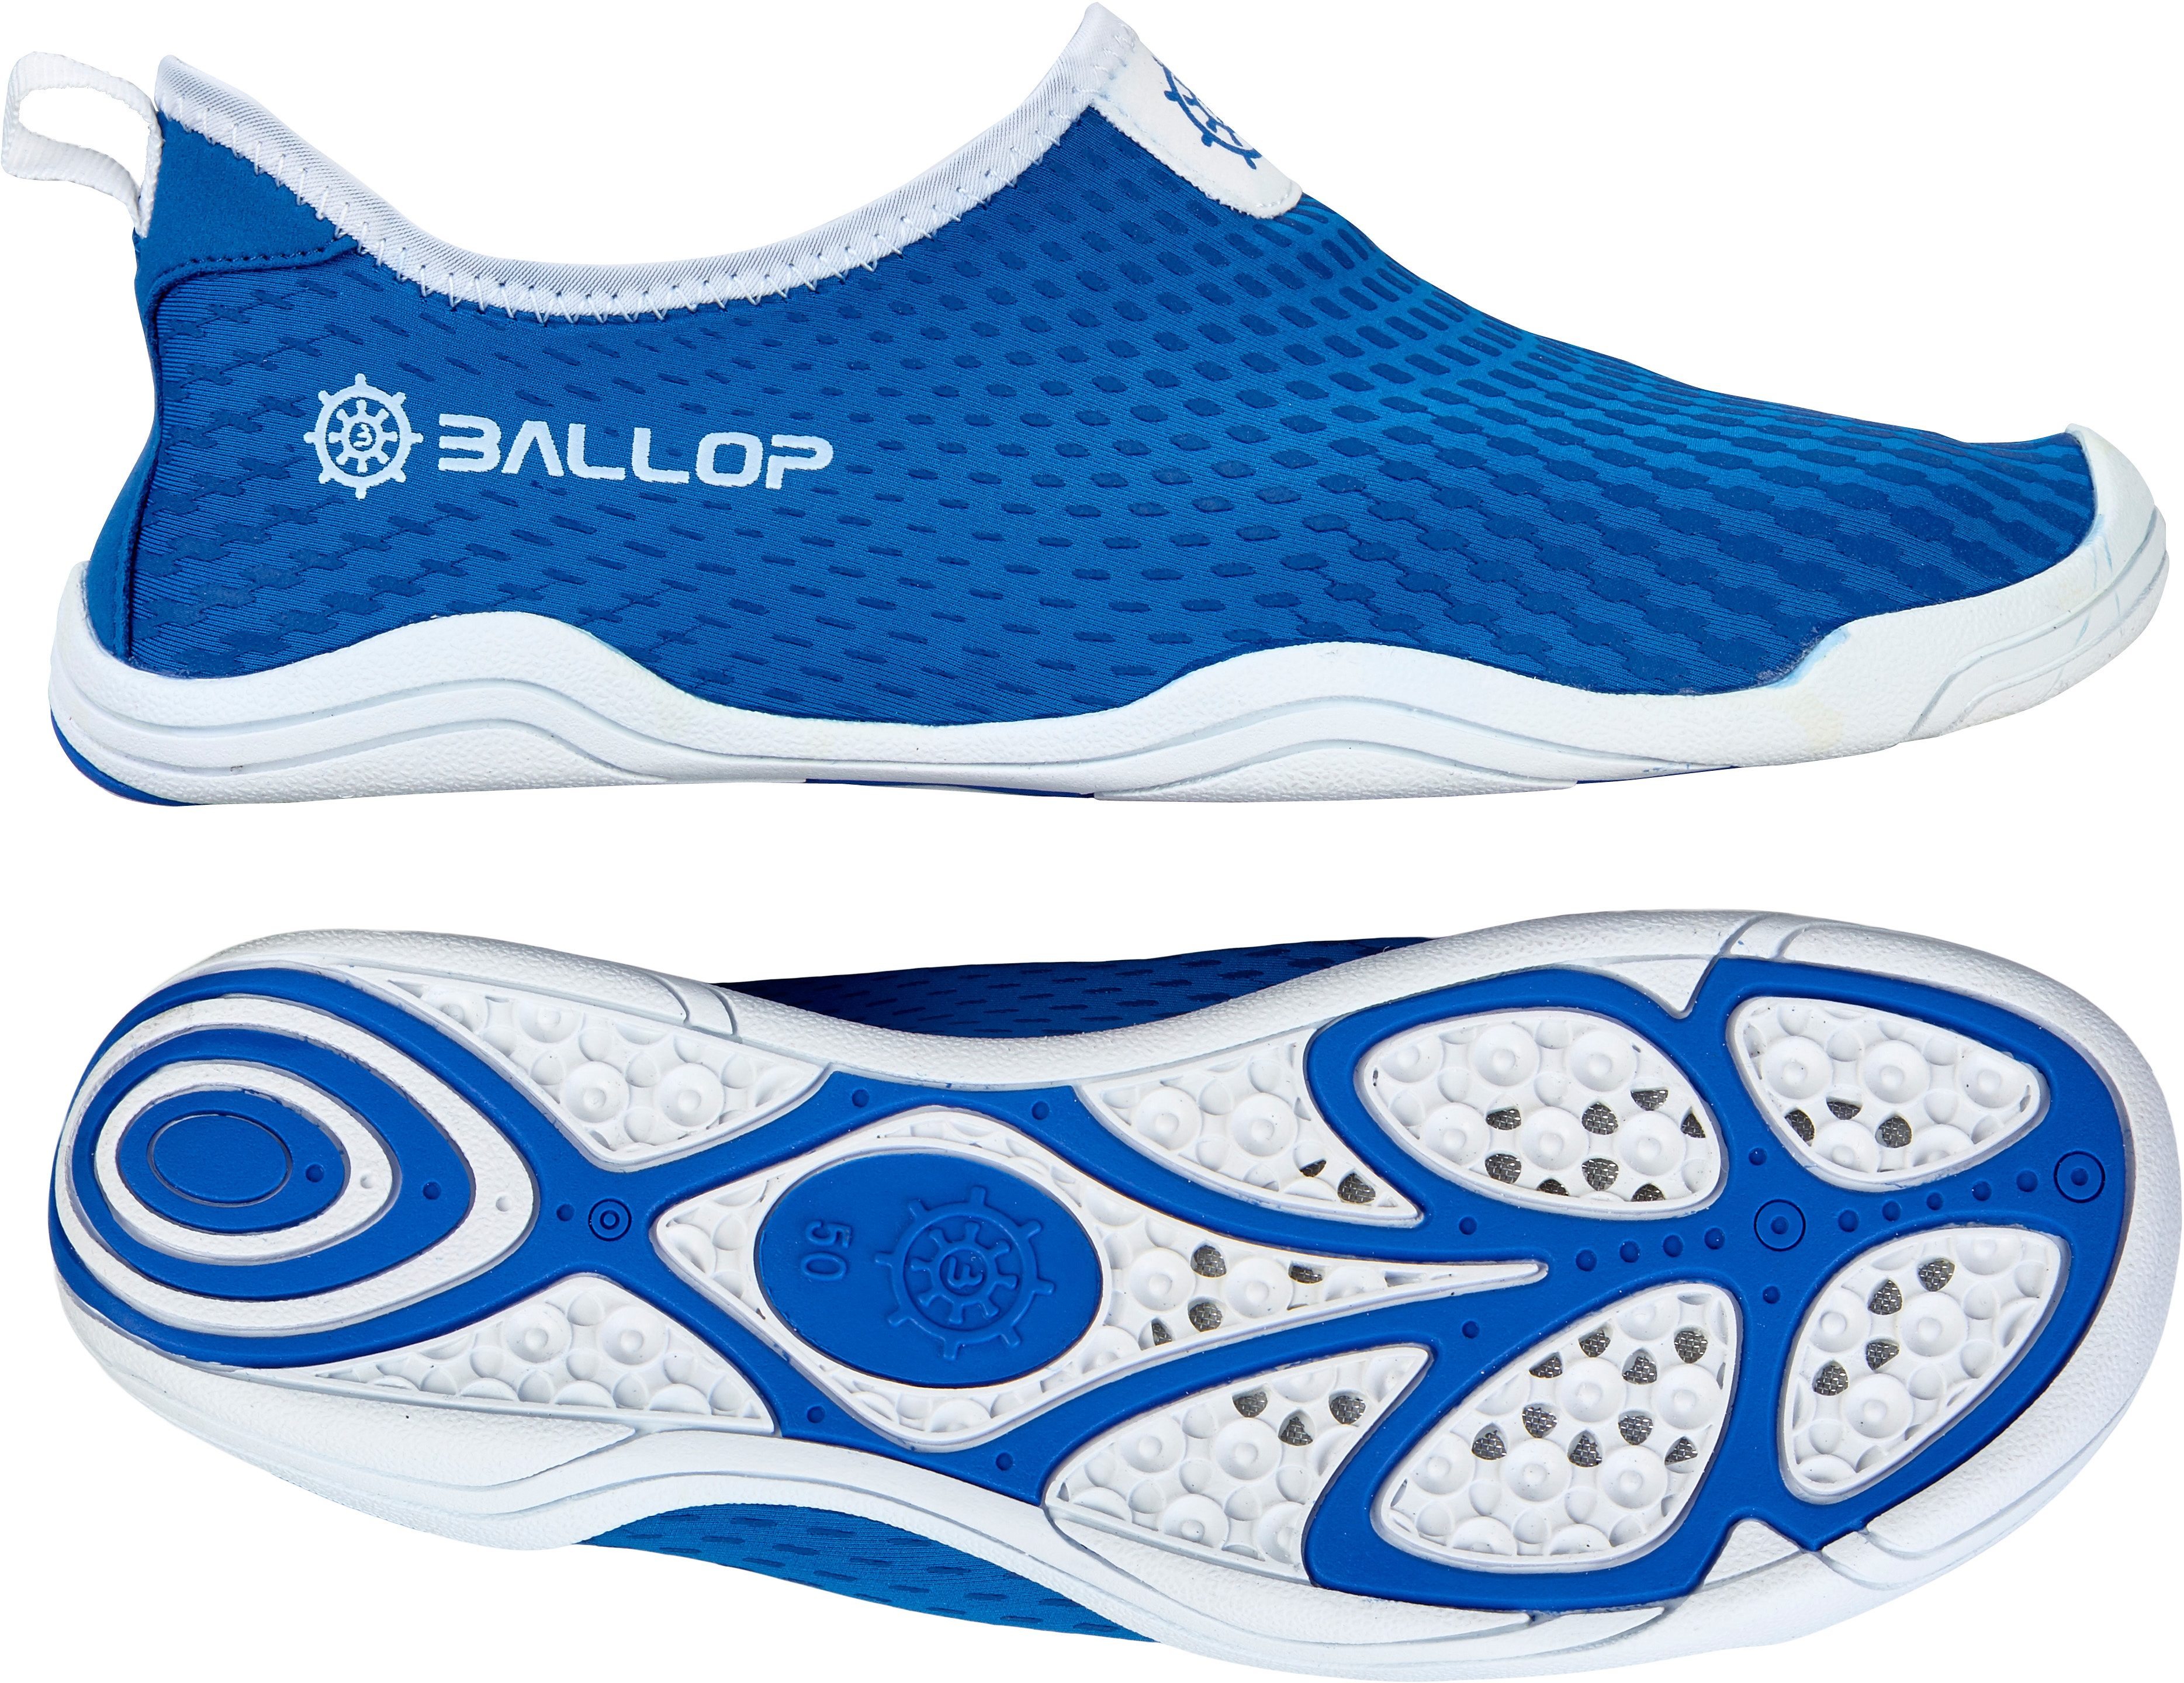 Otto - Ballop NU 15% KORTING: Ballop barefoot-schoenen, Aqua Fit Voyager Blue